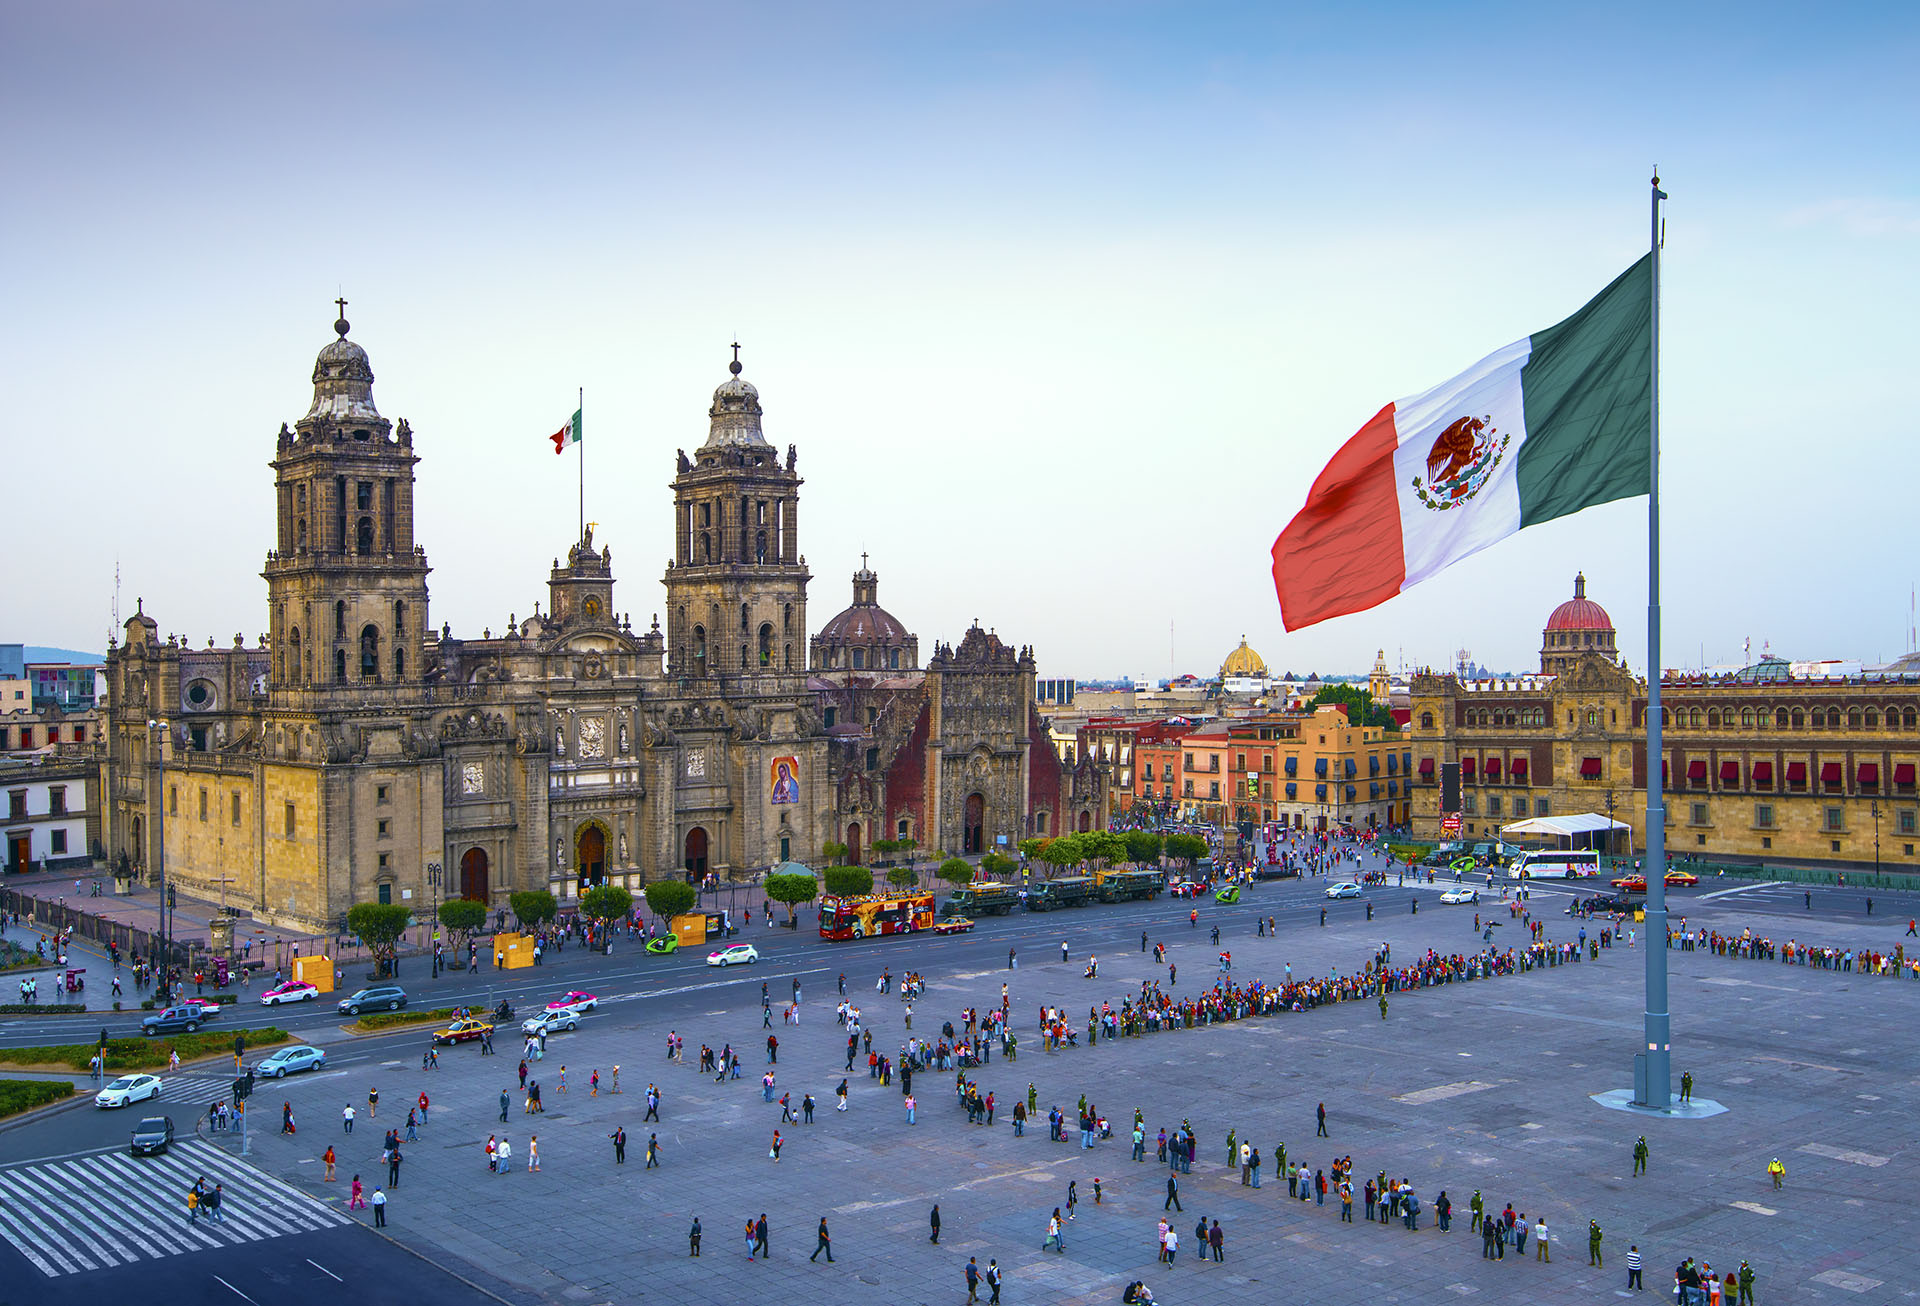 La Ciudad de México es famosa por su Templo Mayor (un templo azteca del siglo XIII), la Catedral Metropolitana de México, de estilo barroco, de los conquistadores españoles y el Palacio Nacional (Getty Images)